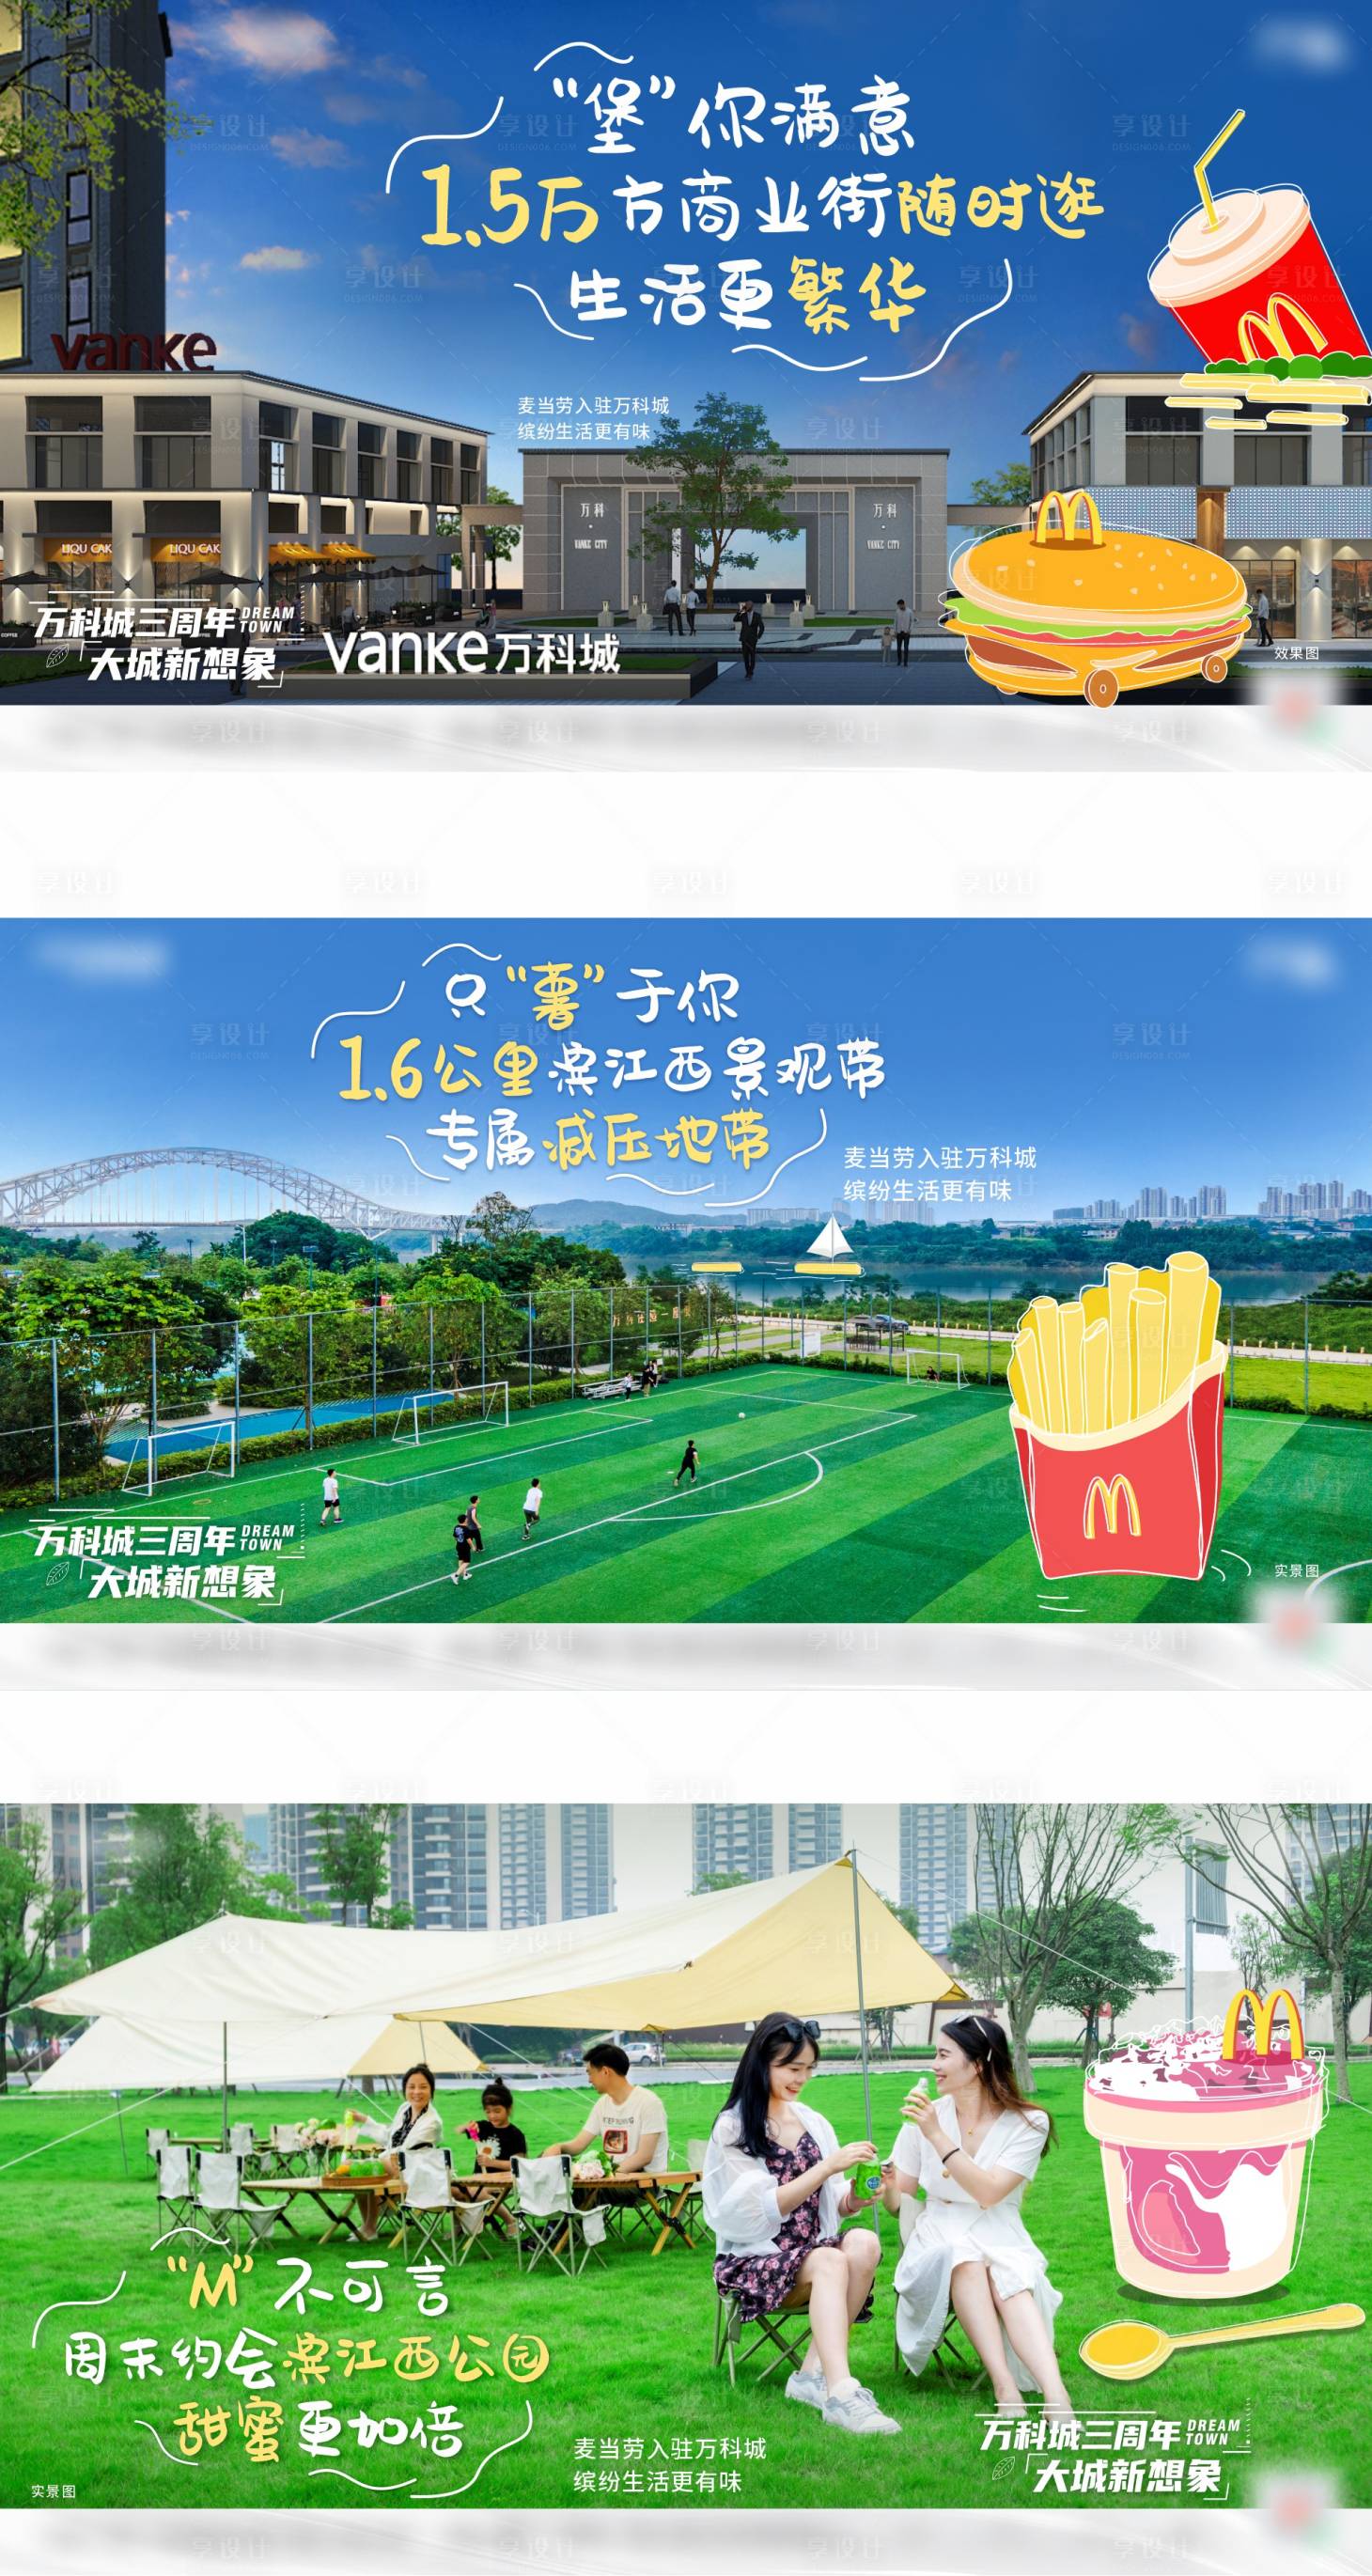 麦当劳中国新总部大楼正式启用，“巨无霸魔方MCHQ”入驻上海西岸——浙江在线